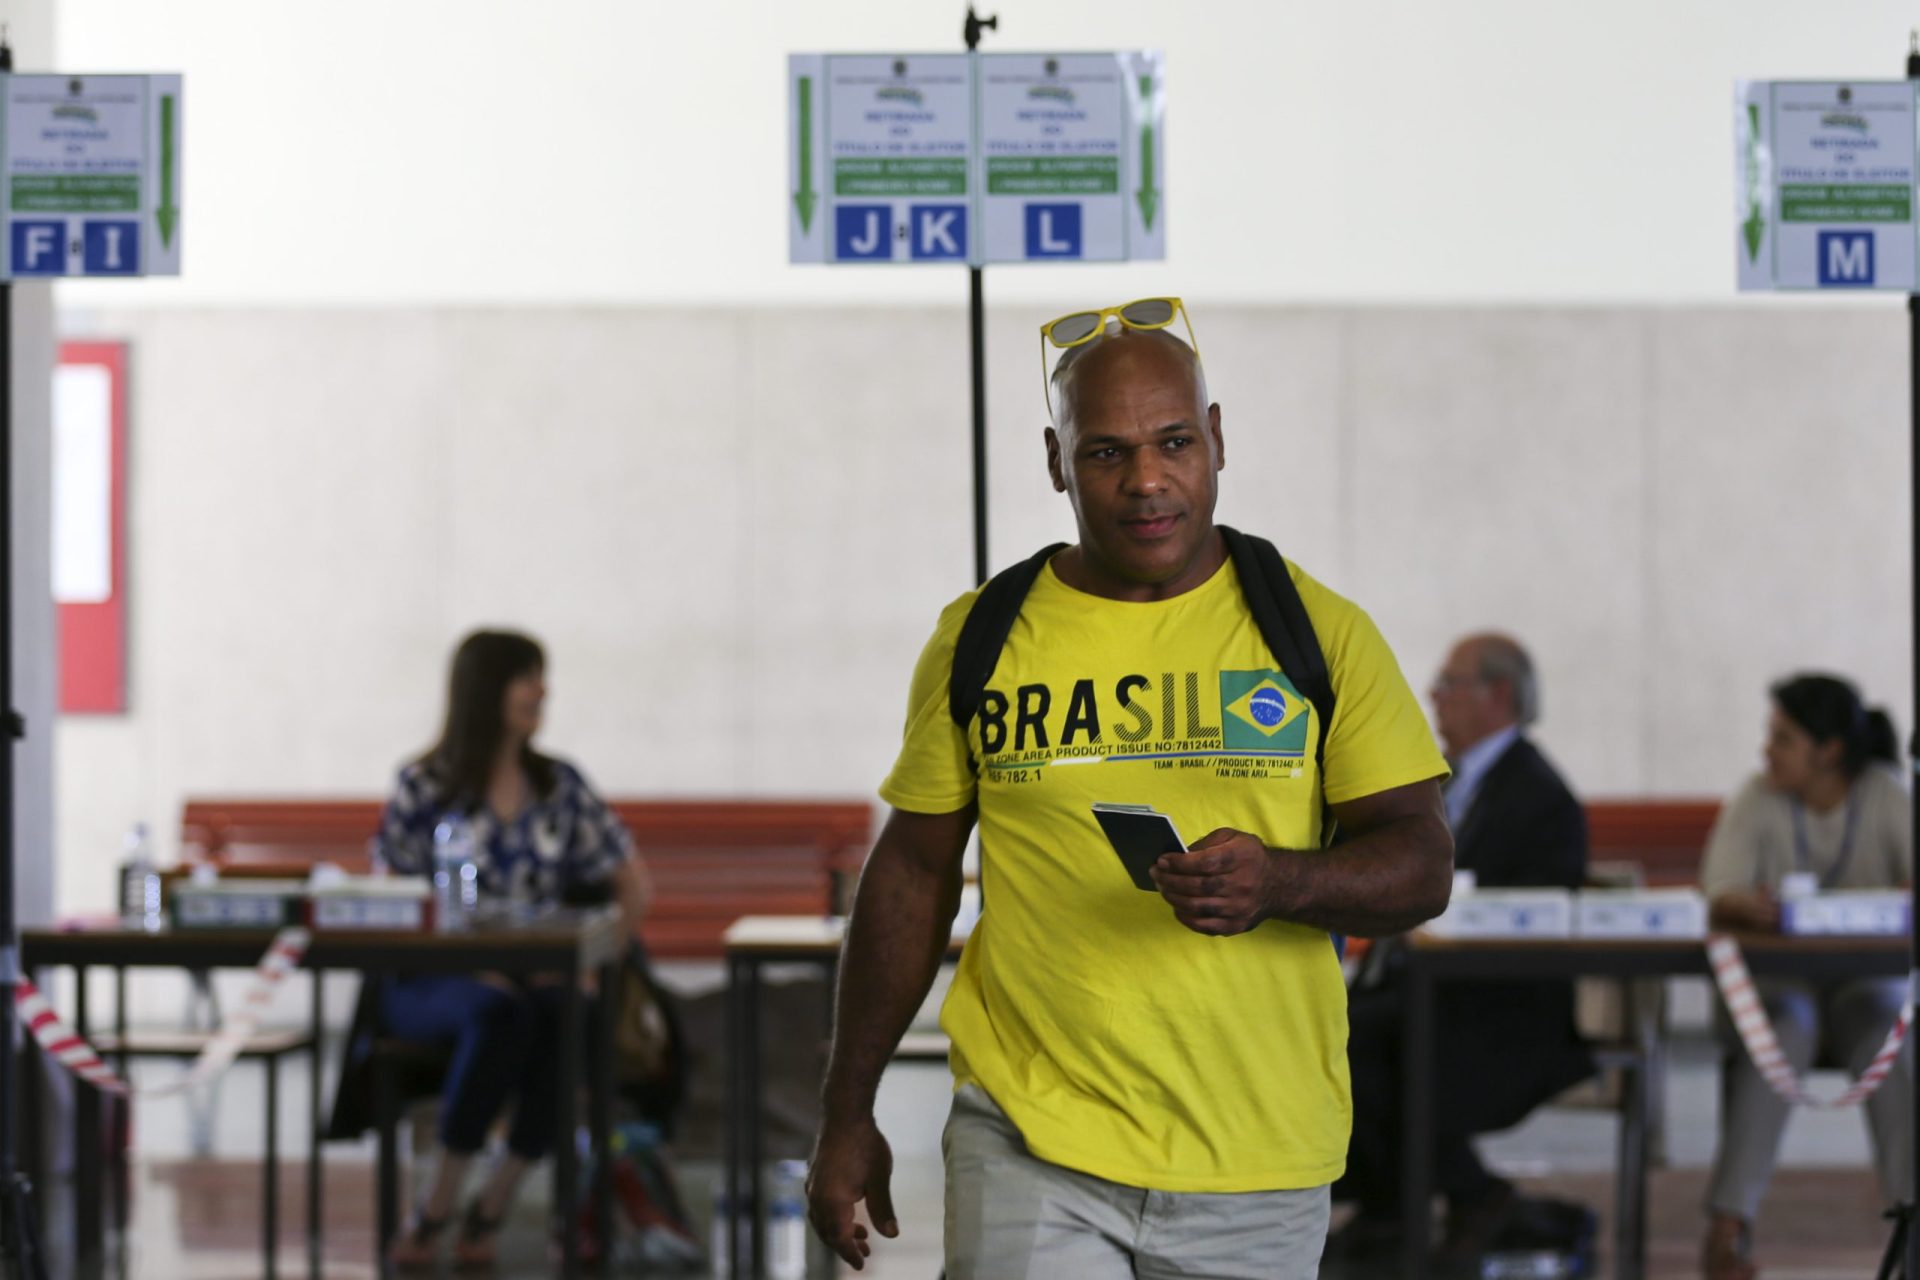 Brasileiros votam em Lisboa com a esperança de uma mudança